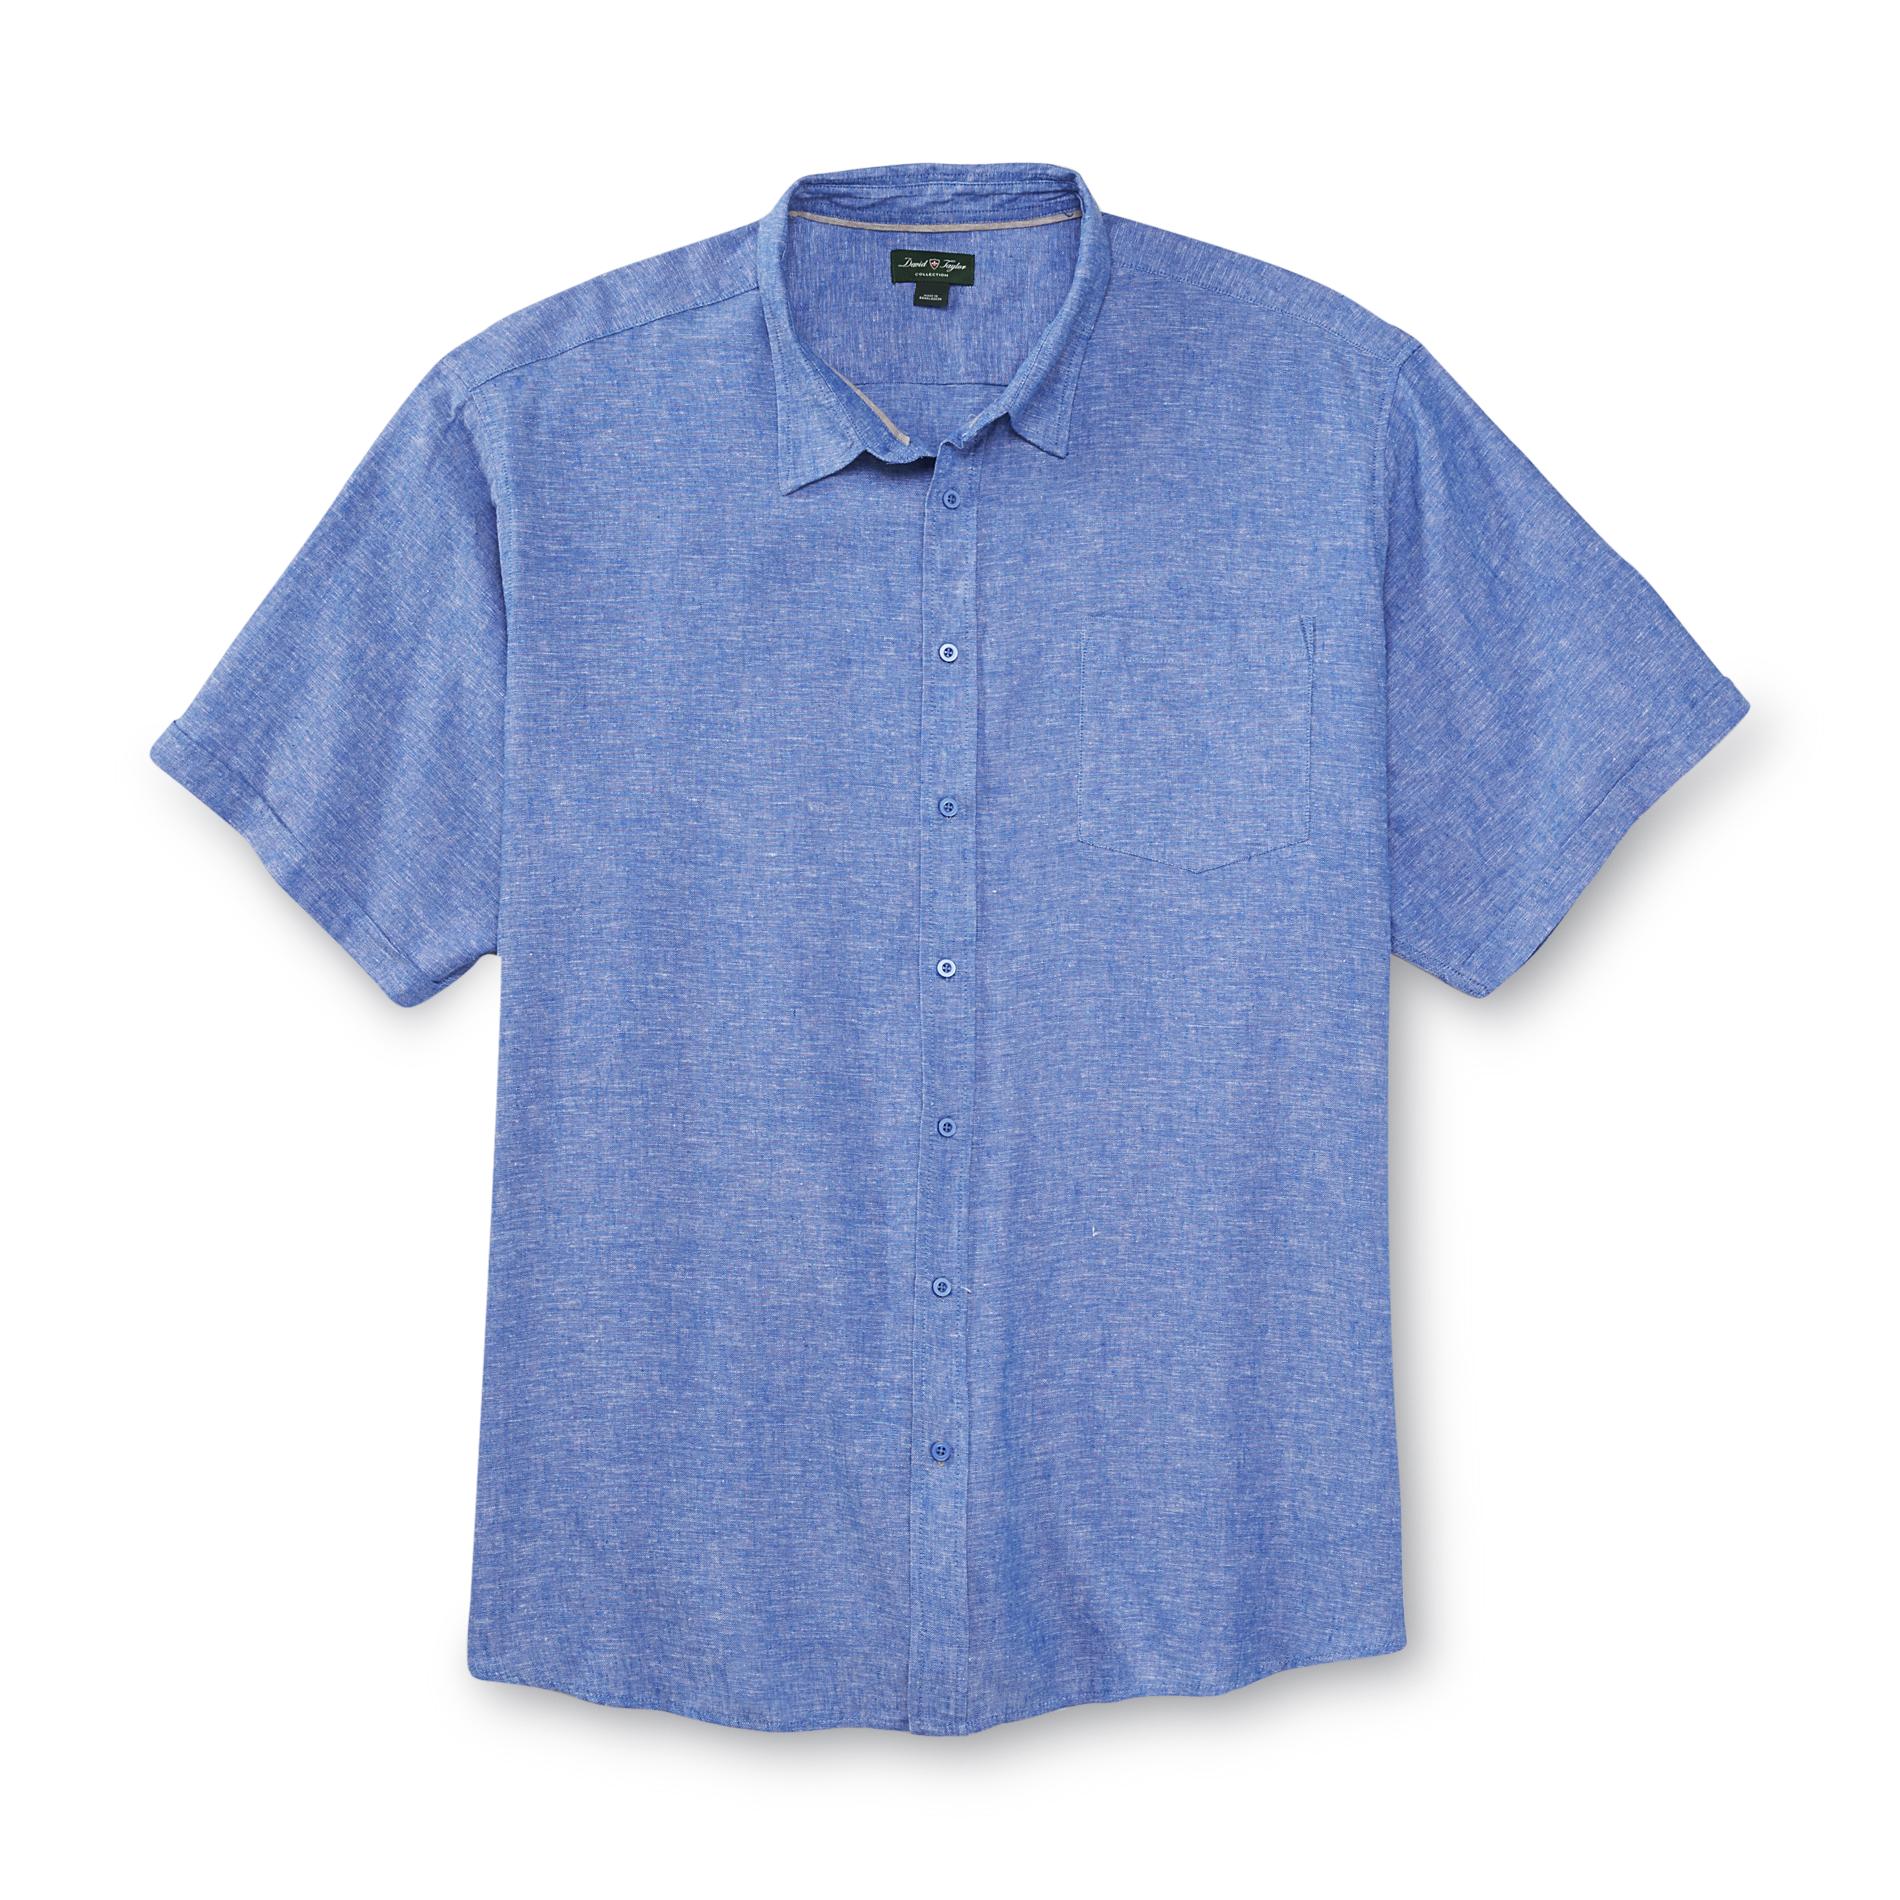 David Taylor Collection Men's Big & Tall Linen-Blend Shirt